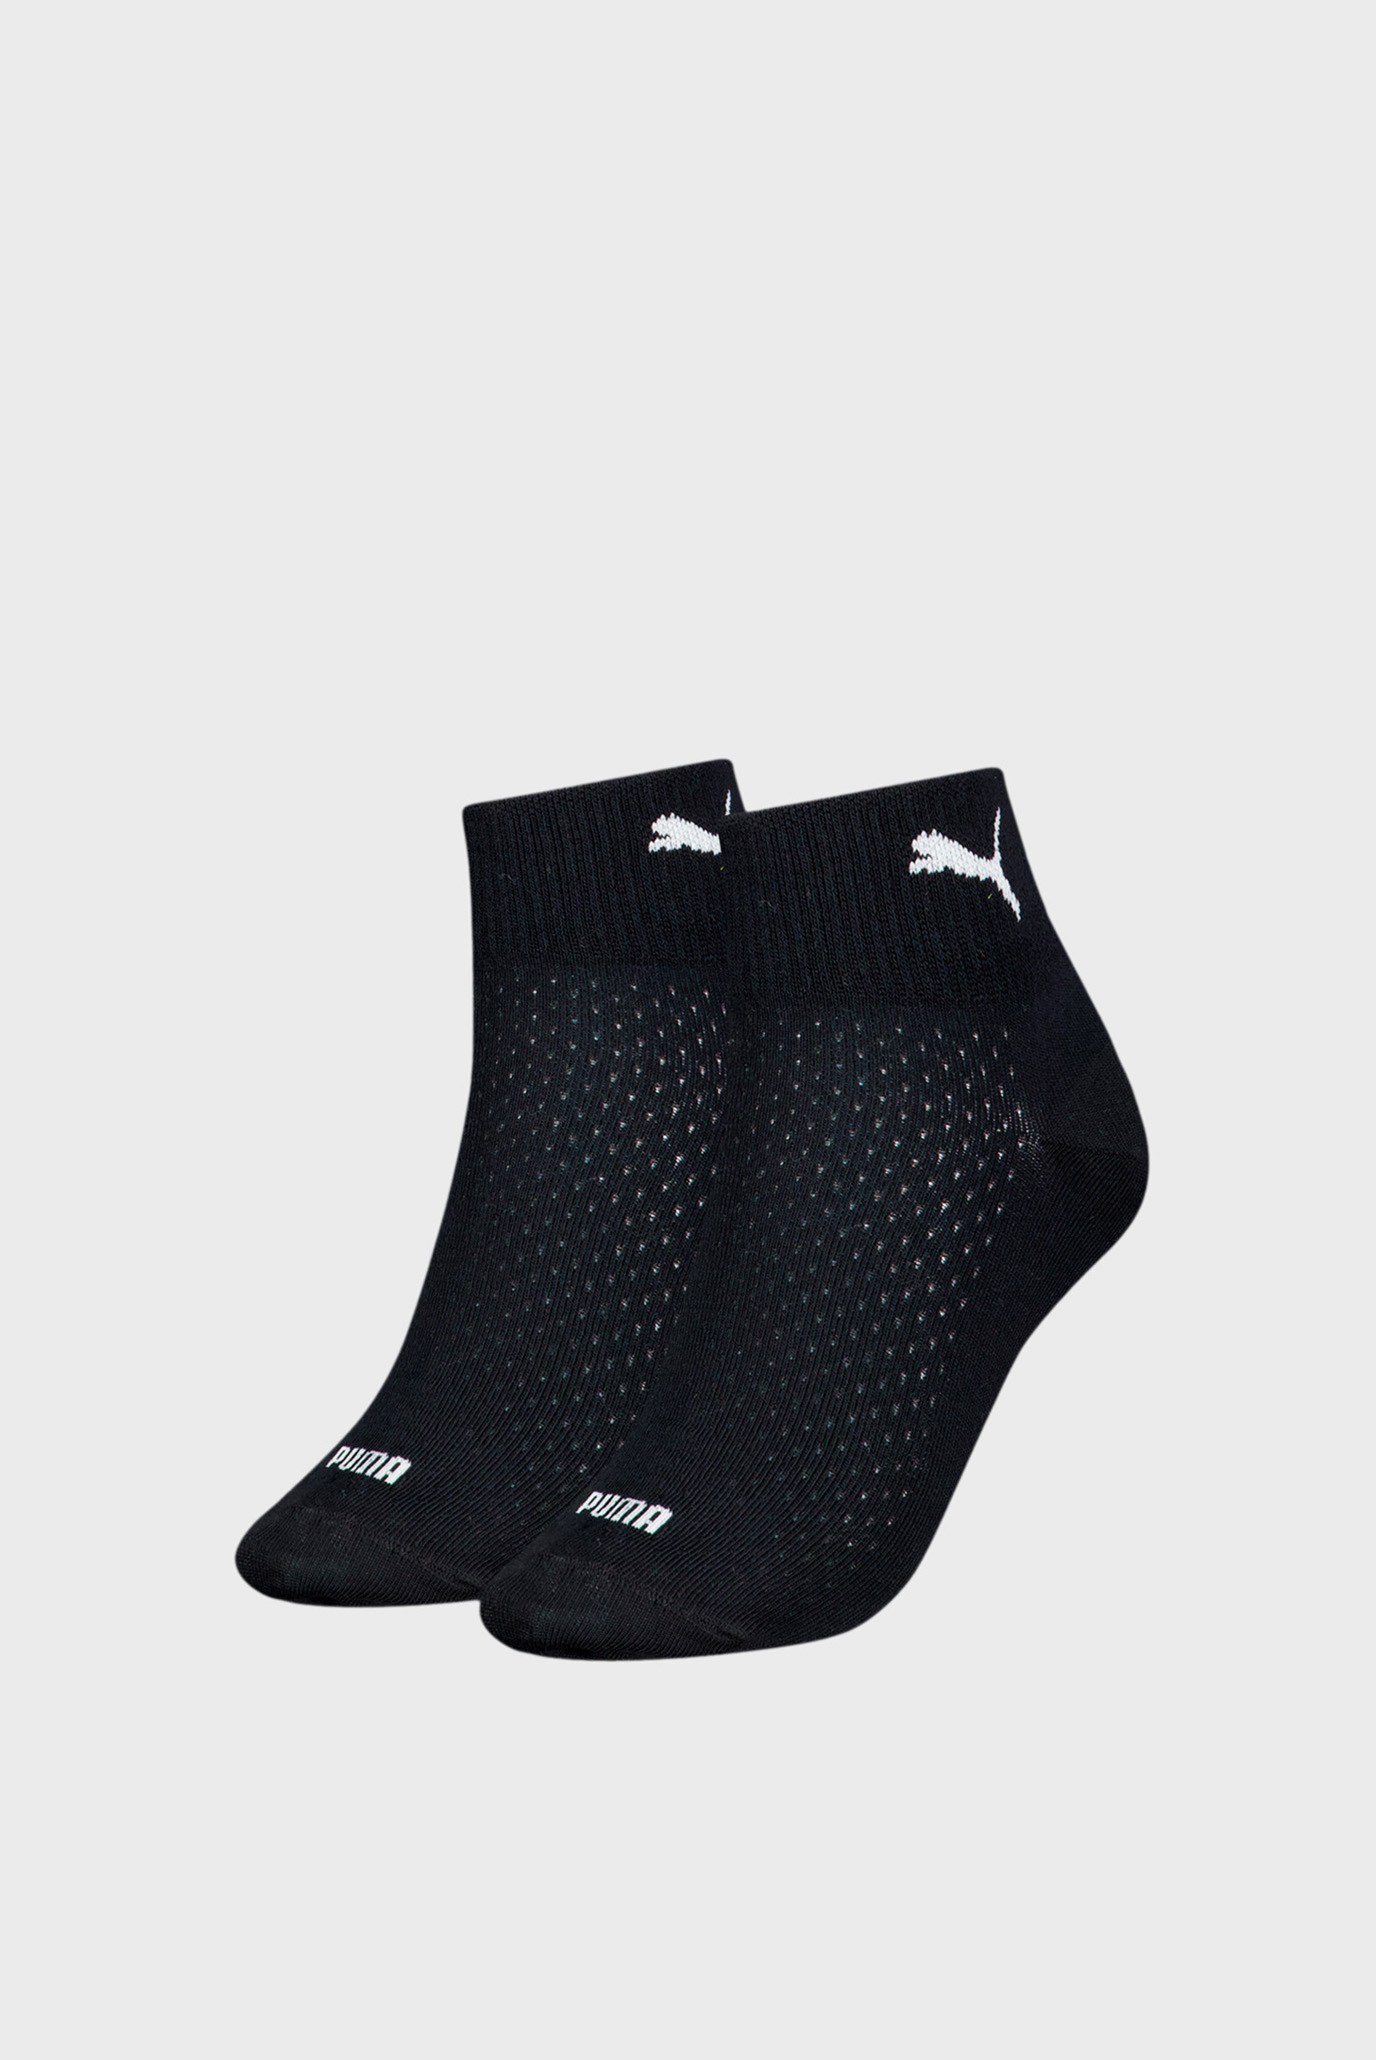 Жіночі чорні шкарпетки (2 пари) PUMA Women's Quarter Socks 2 pack 1